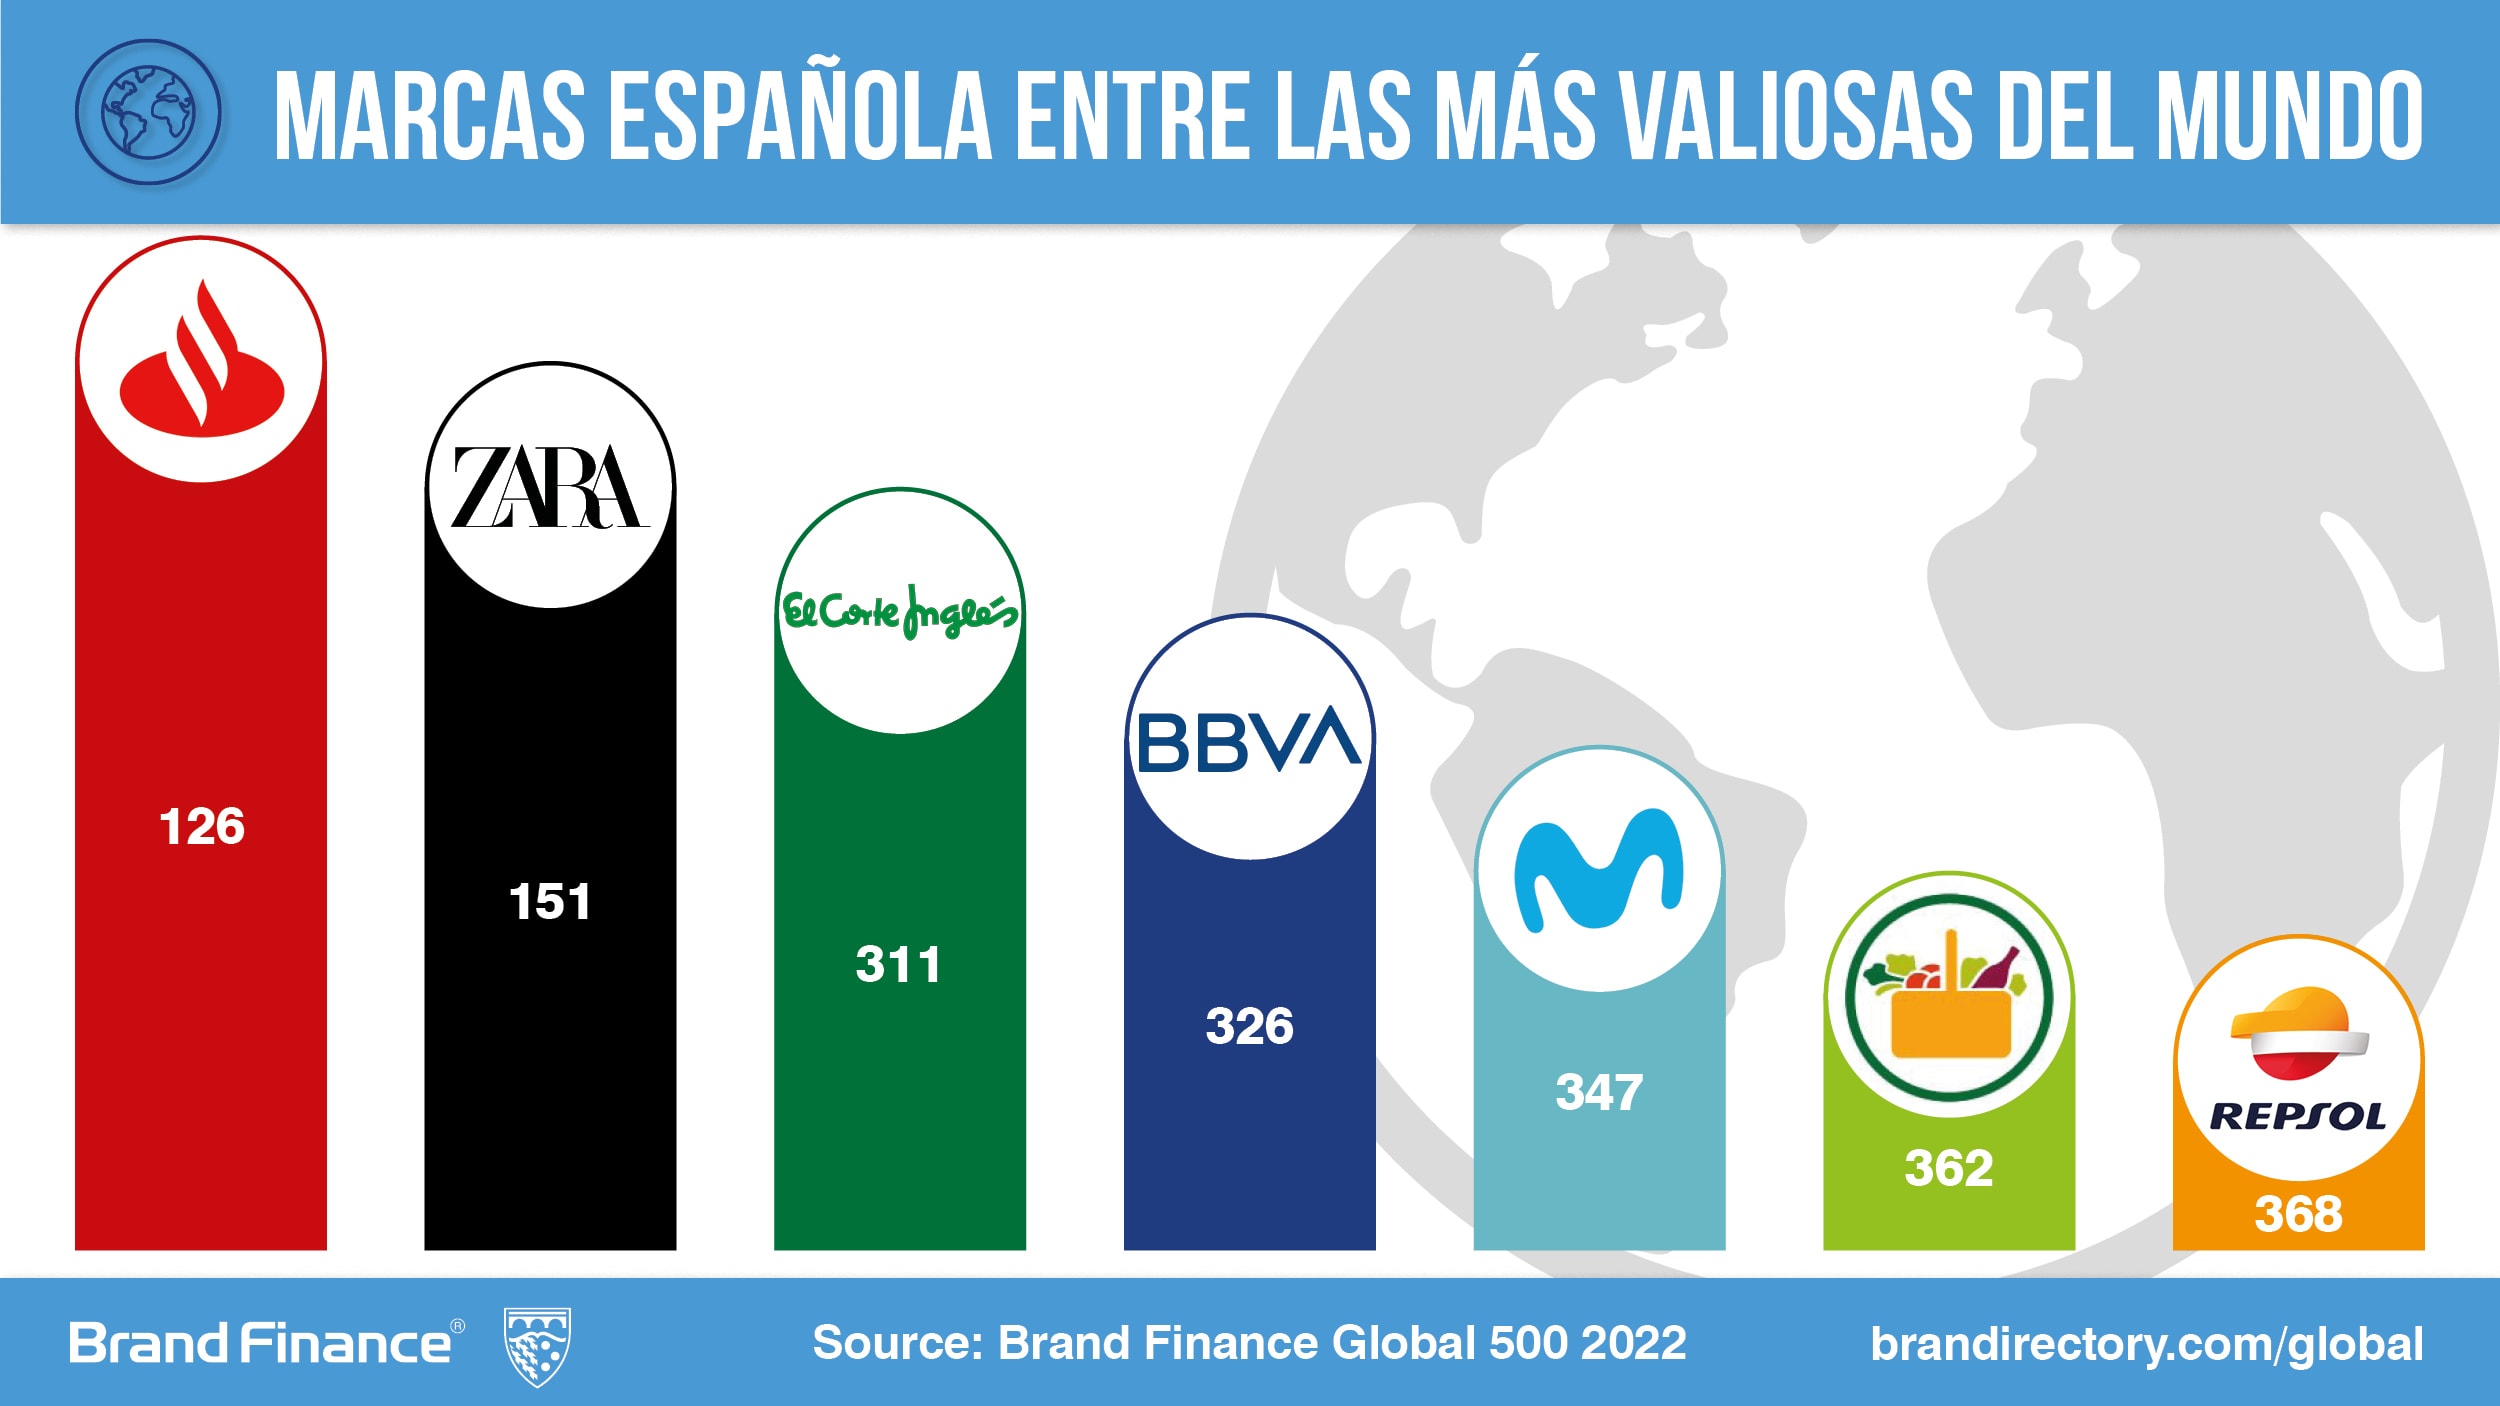 Las marcas españolas más valiosas del mundo empiezan a recuperar el valor  perdido con la pandemia según Brand Finance | Press Release | Brand Finance